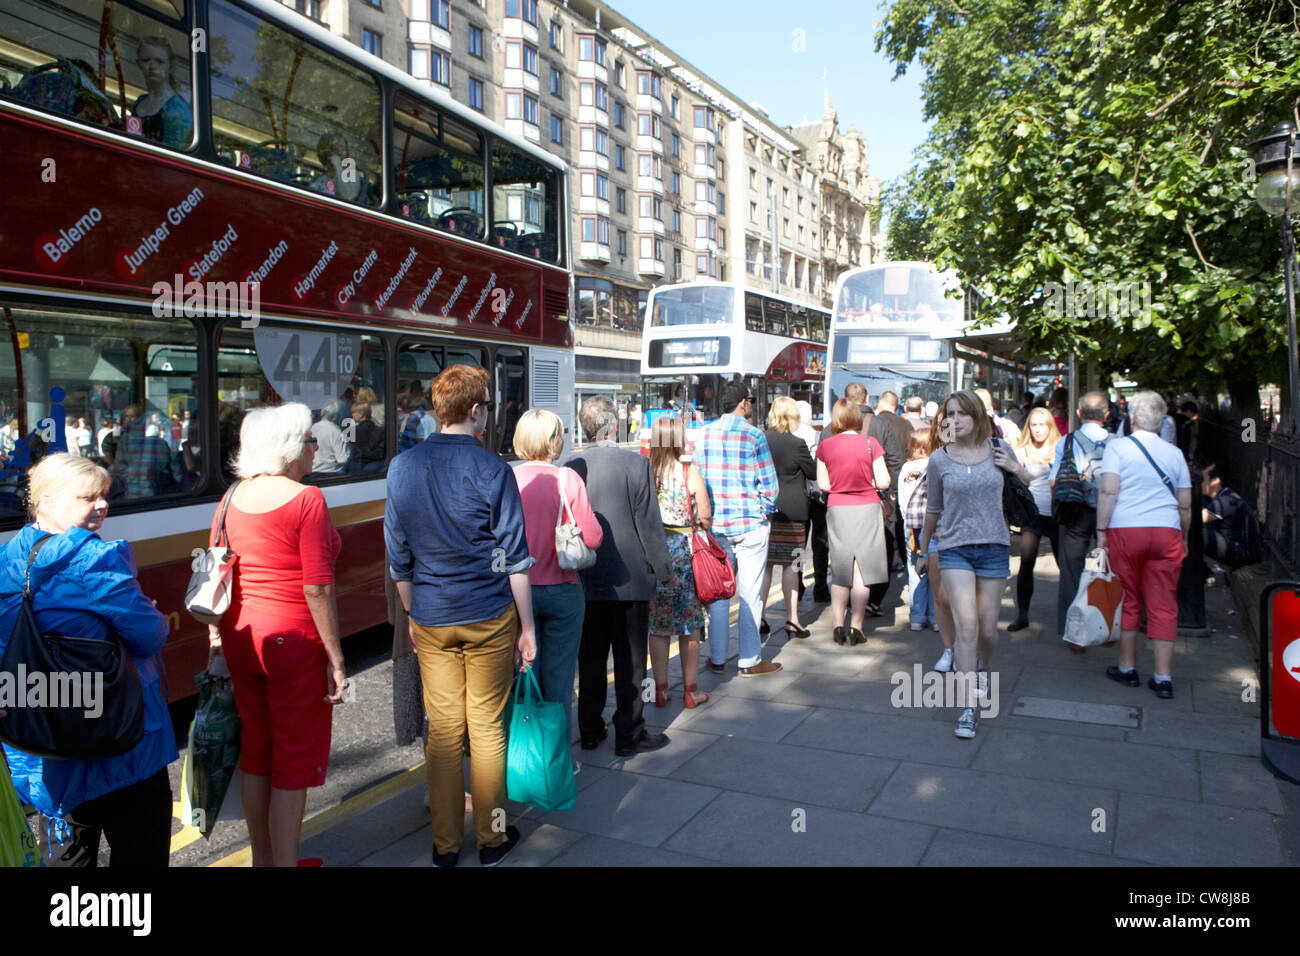 Menschen Schlange stehen am Edinburgh Princes street Bus stop Schottland Großbritannien Vereinigtes Königreich Stockfoto